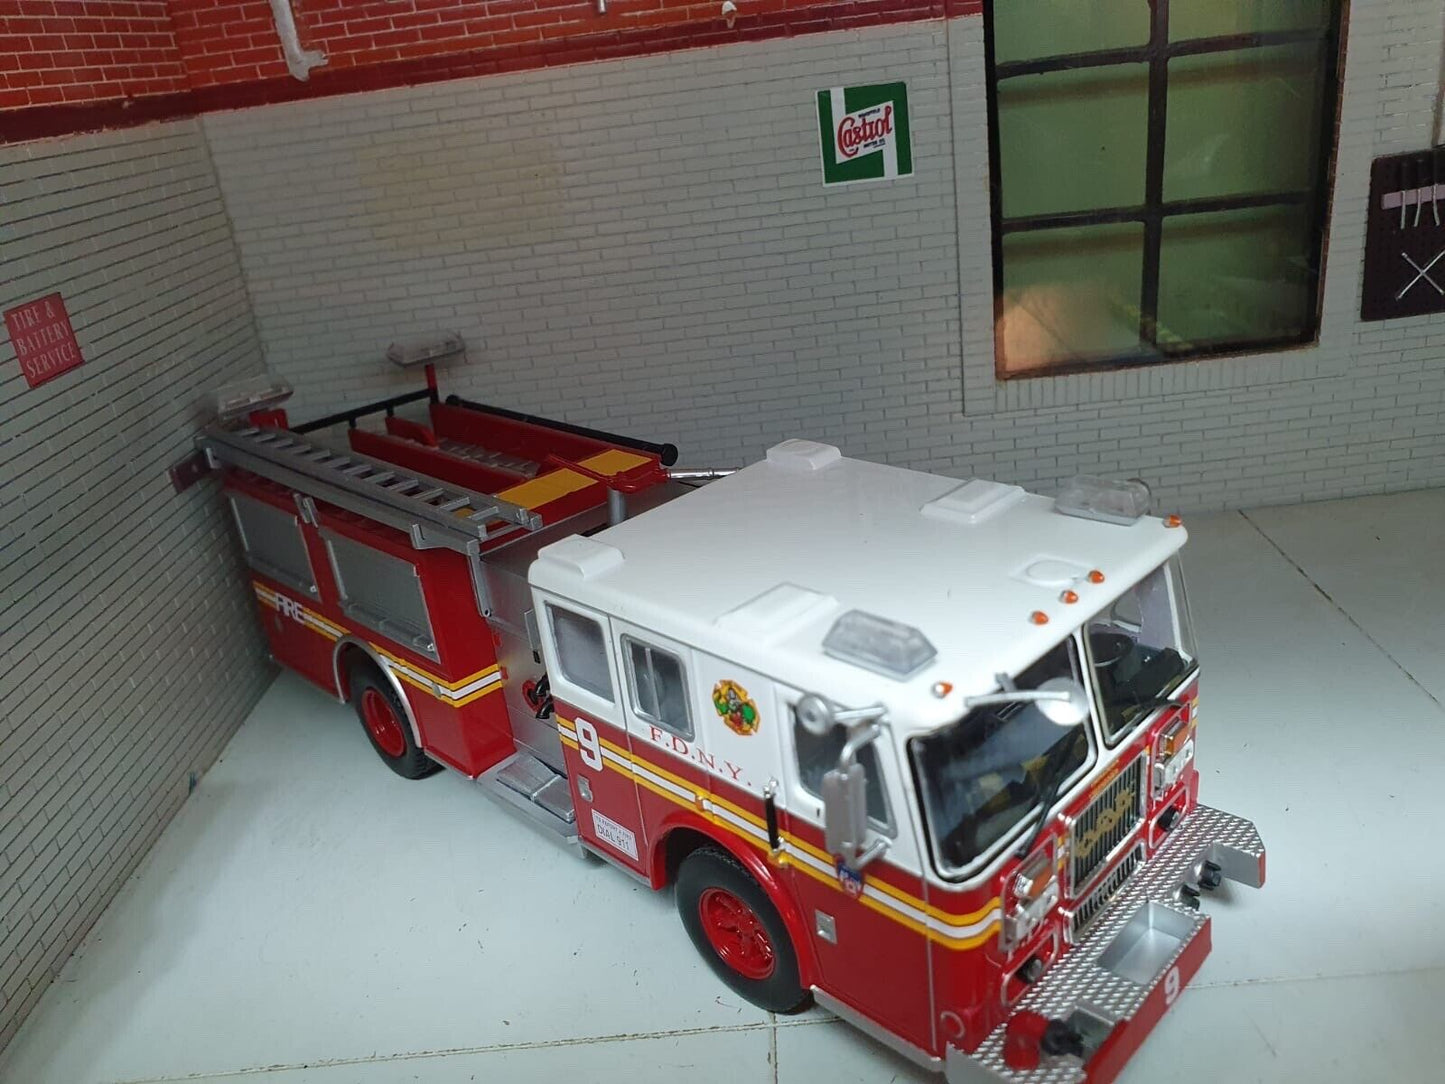 New Yorker Feuerwehrauto FDNY Seagrave Marauder 2 Pumper 1:43